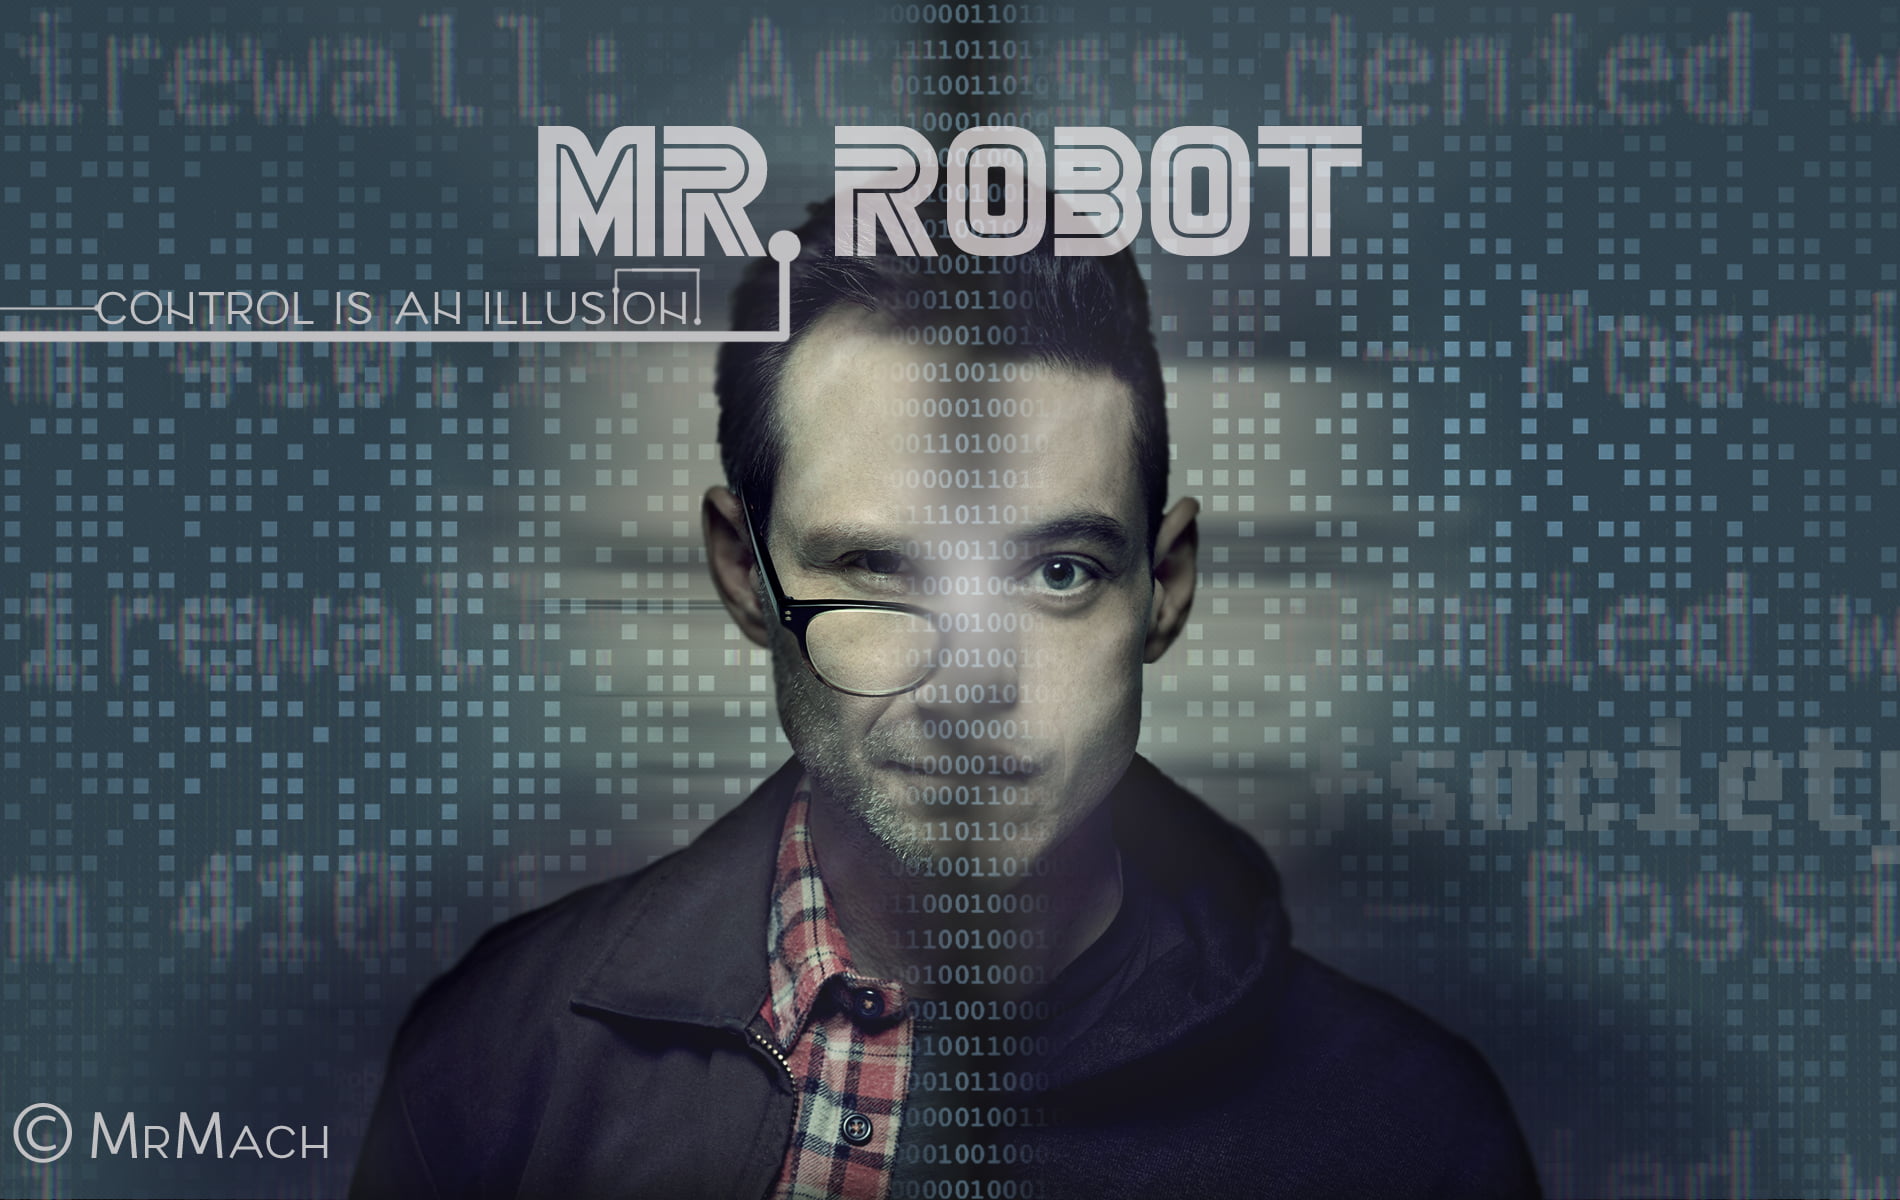 Mr. Robot poster, Mr. Robot, Elliot (Mr. Robot), Christian Slater, Rami Malek